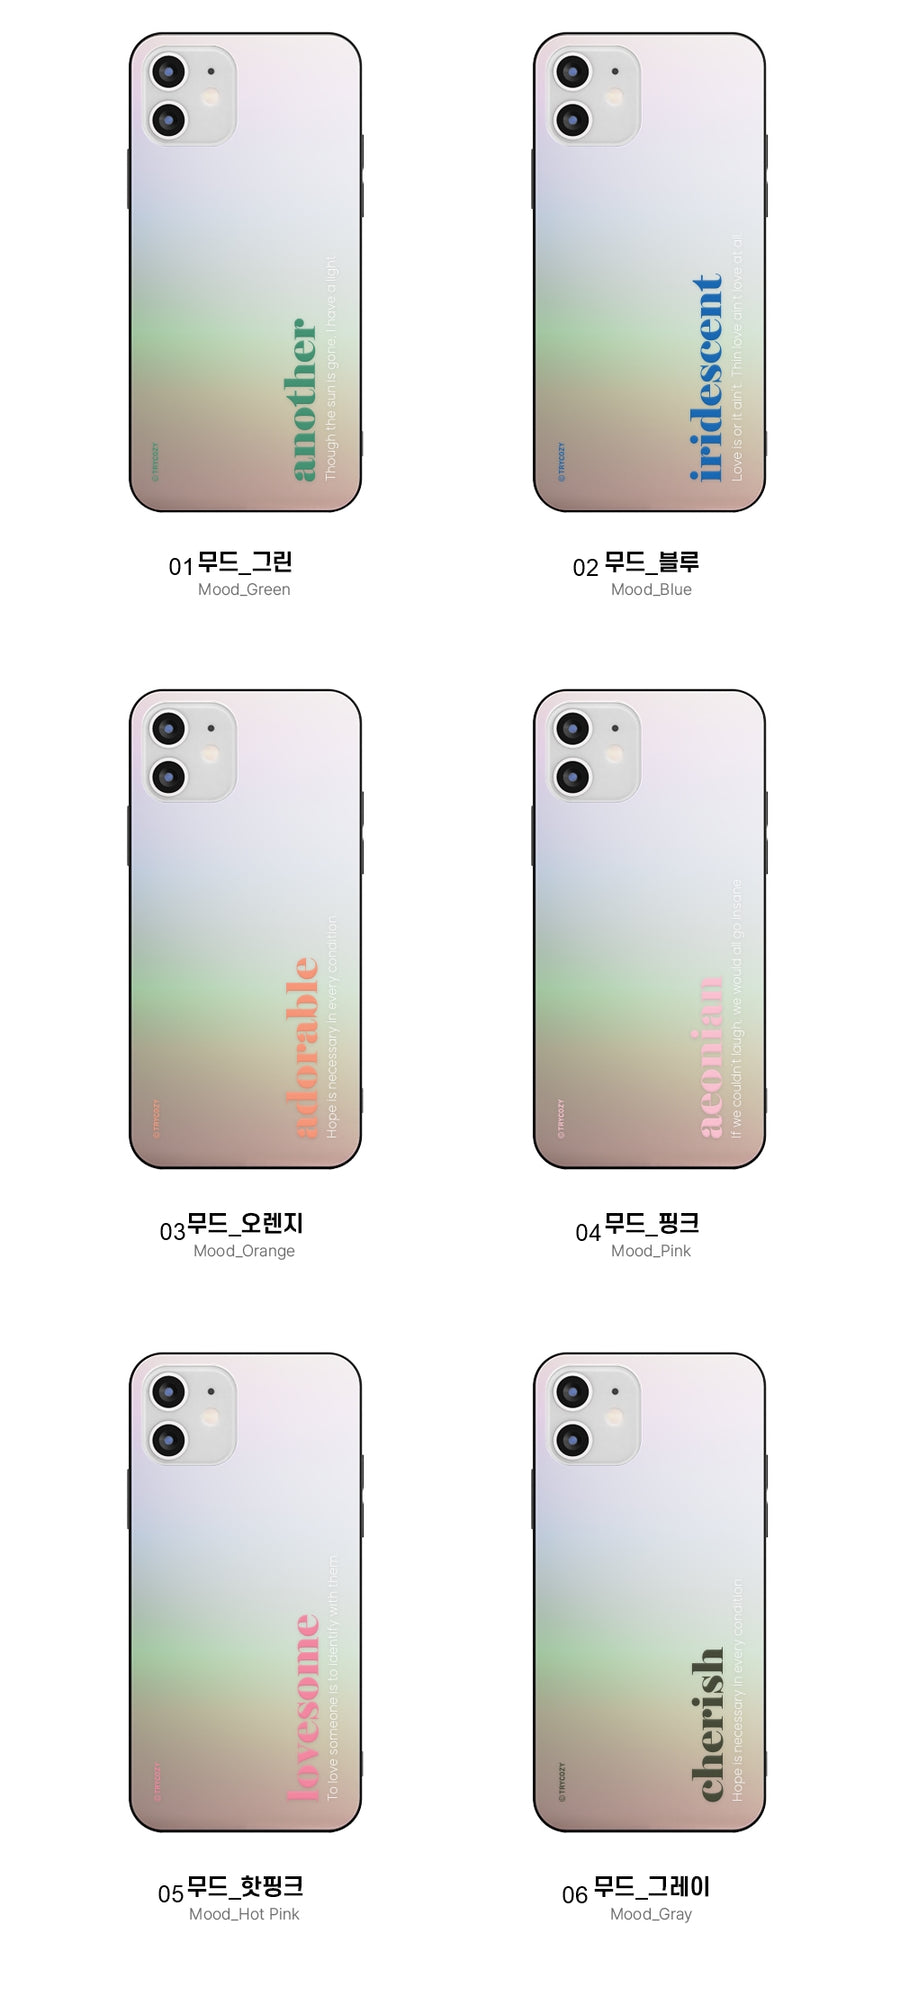 韓國直送 | M57 MOOD - 炫彩鏡面手機殼 iPhone / Samsung Galaxy